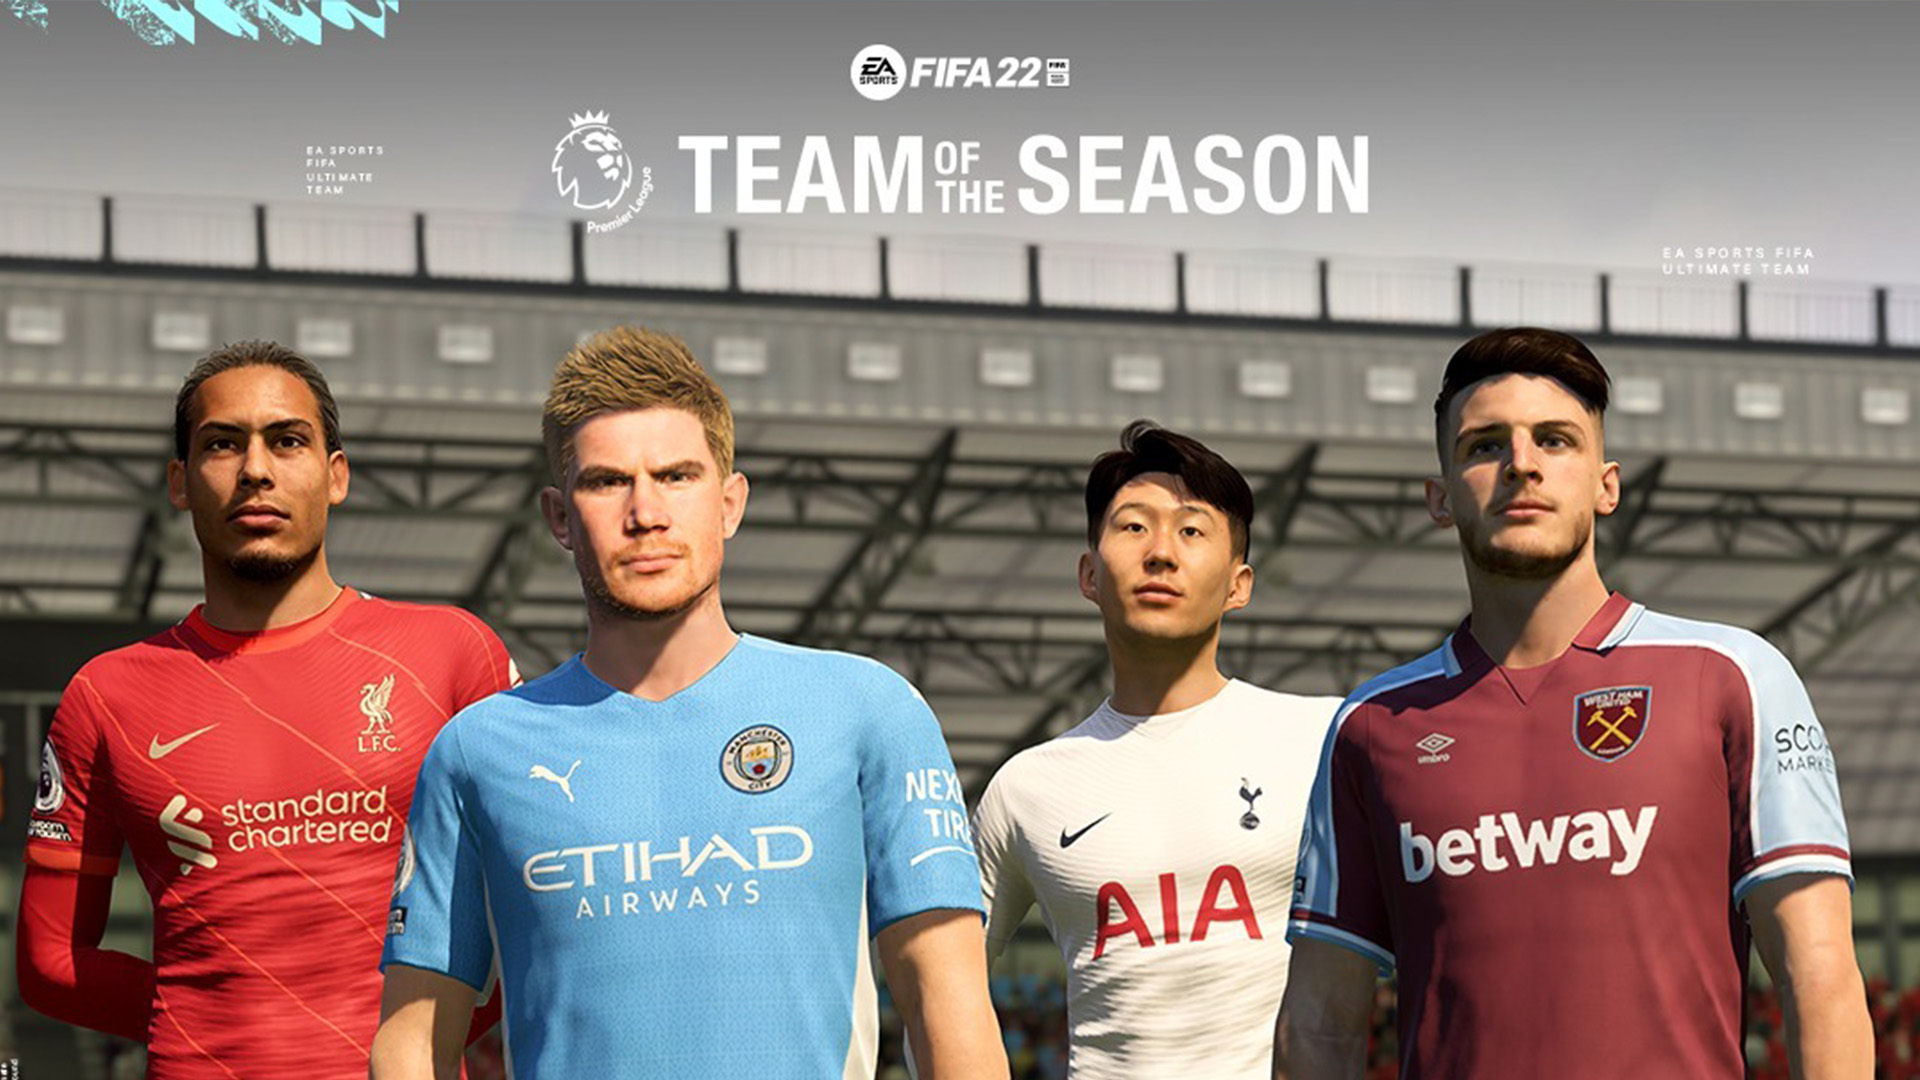 Notas do FIFA 22 - Melhores jogadores da Premier League - Site Oficial da  EA SPORTS